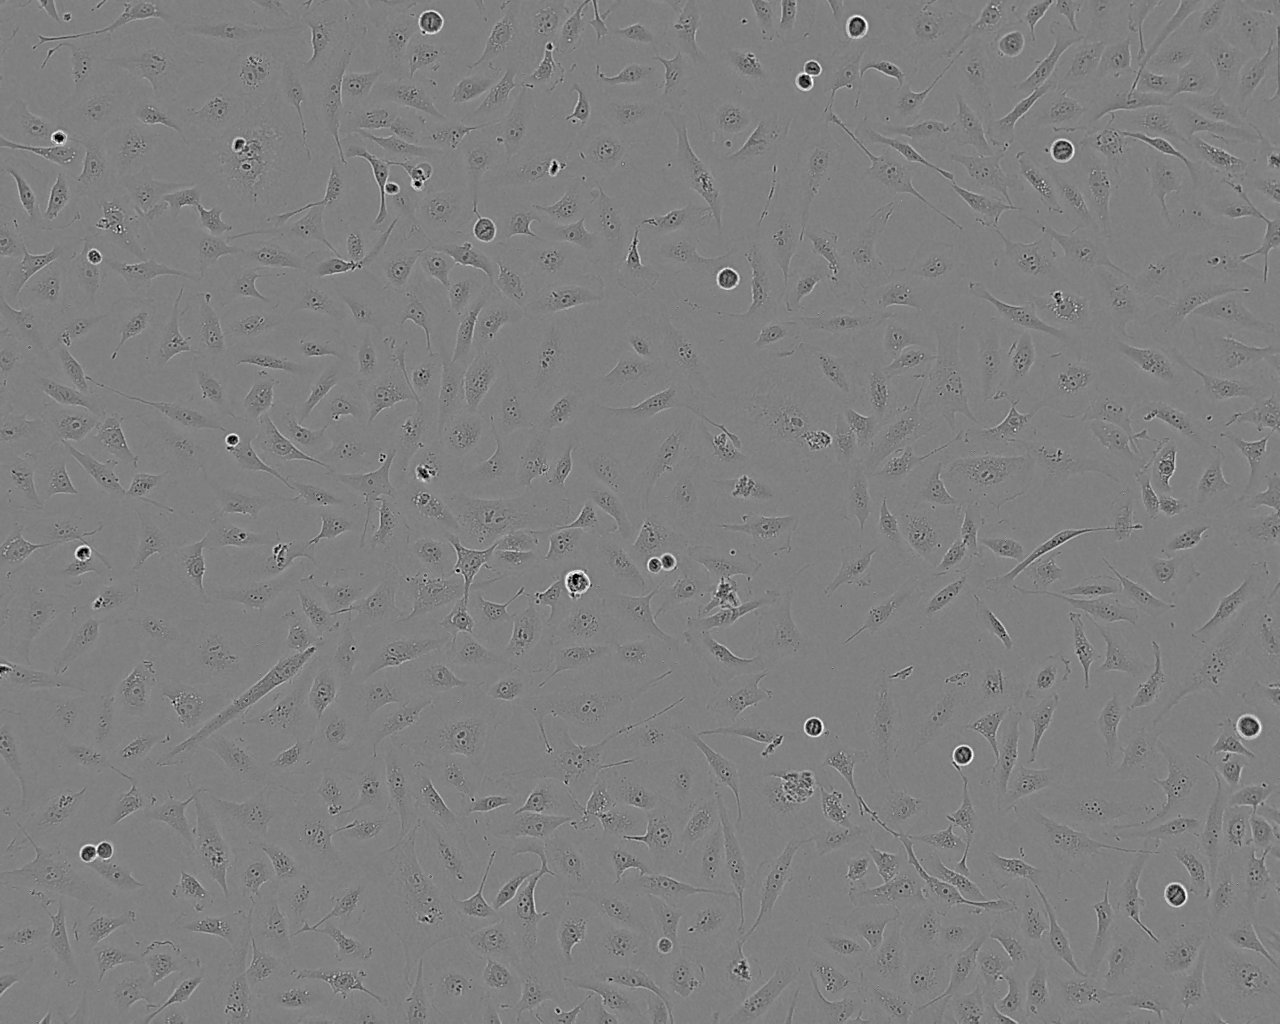 MC/9 Cell:小鼠肥大细胞系,MC/9 Cell